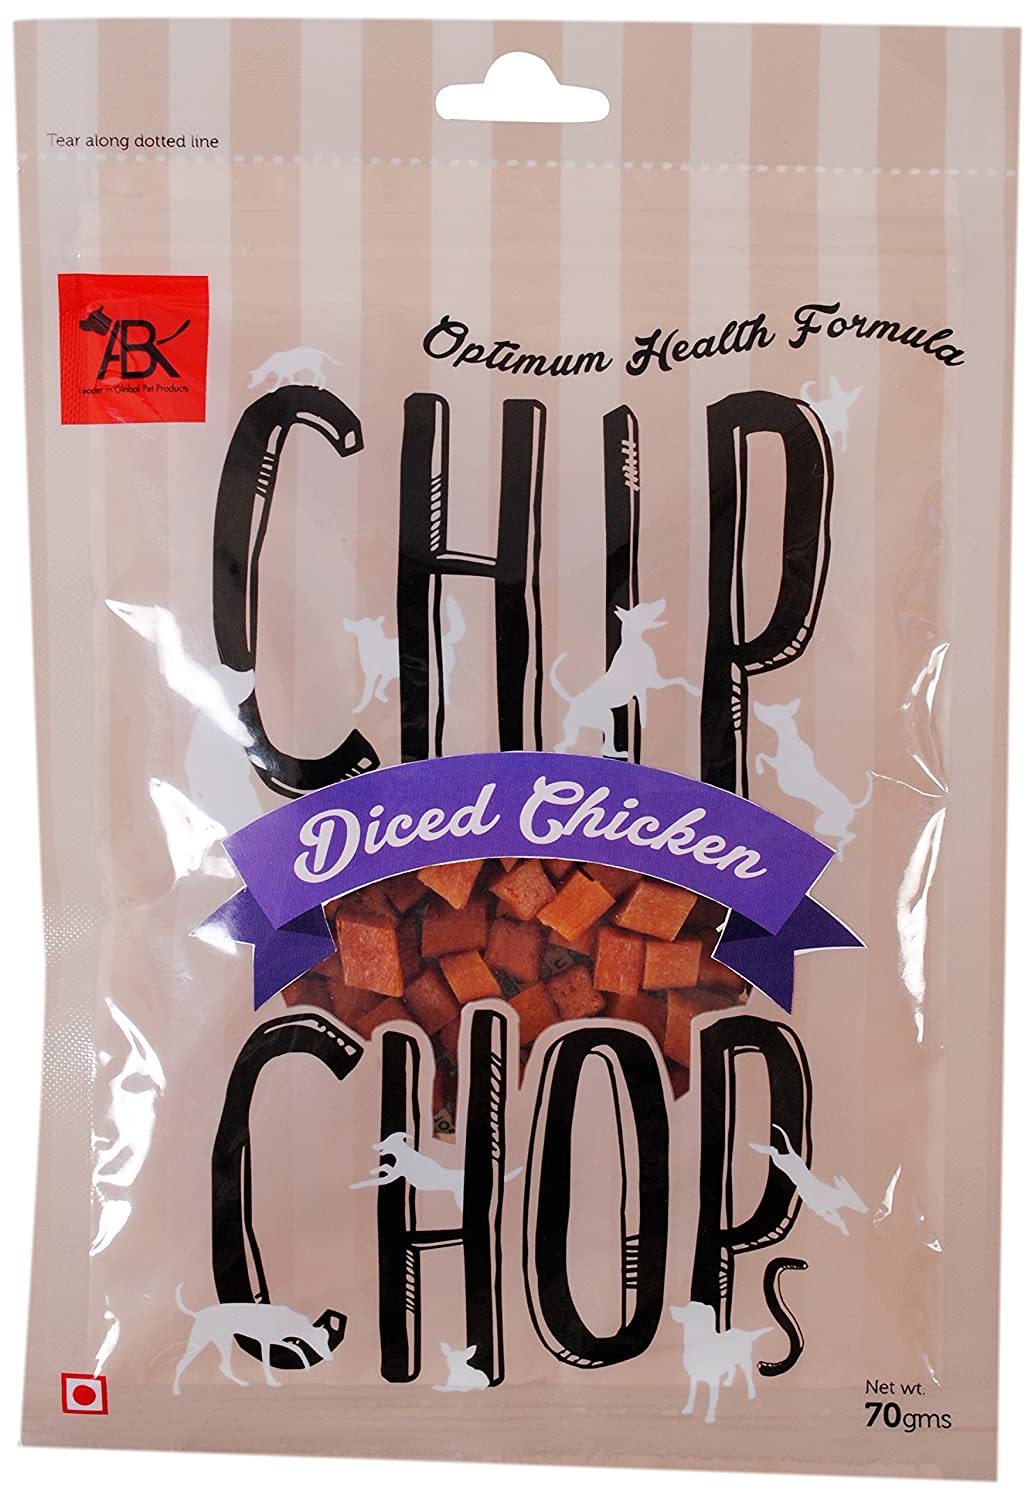 chip chop Diced Chicken